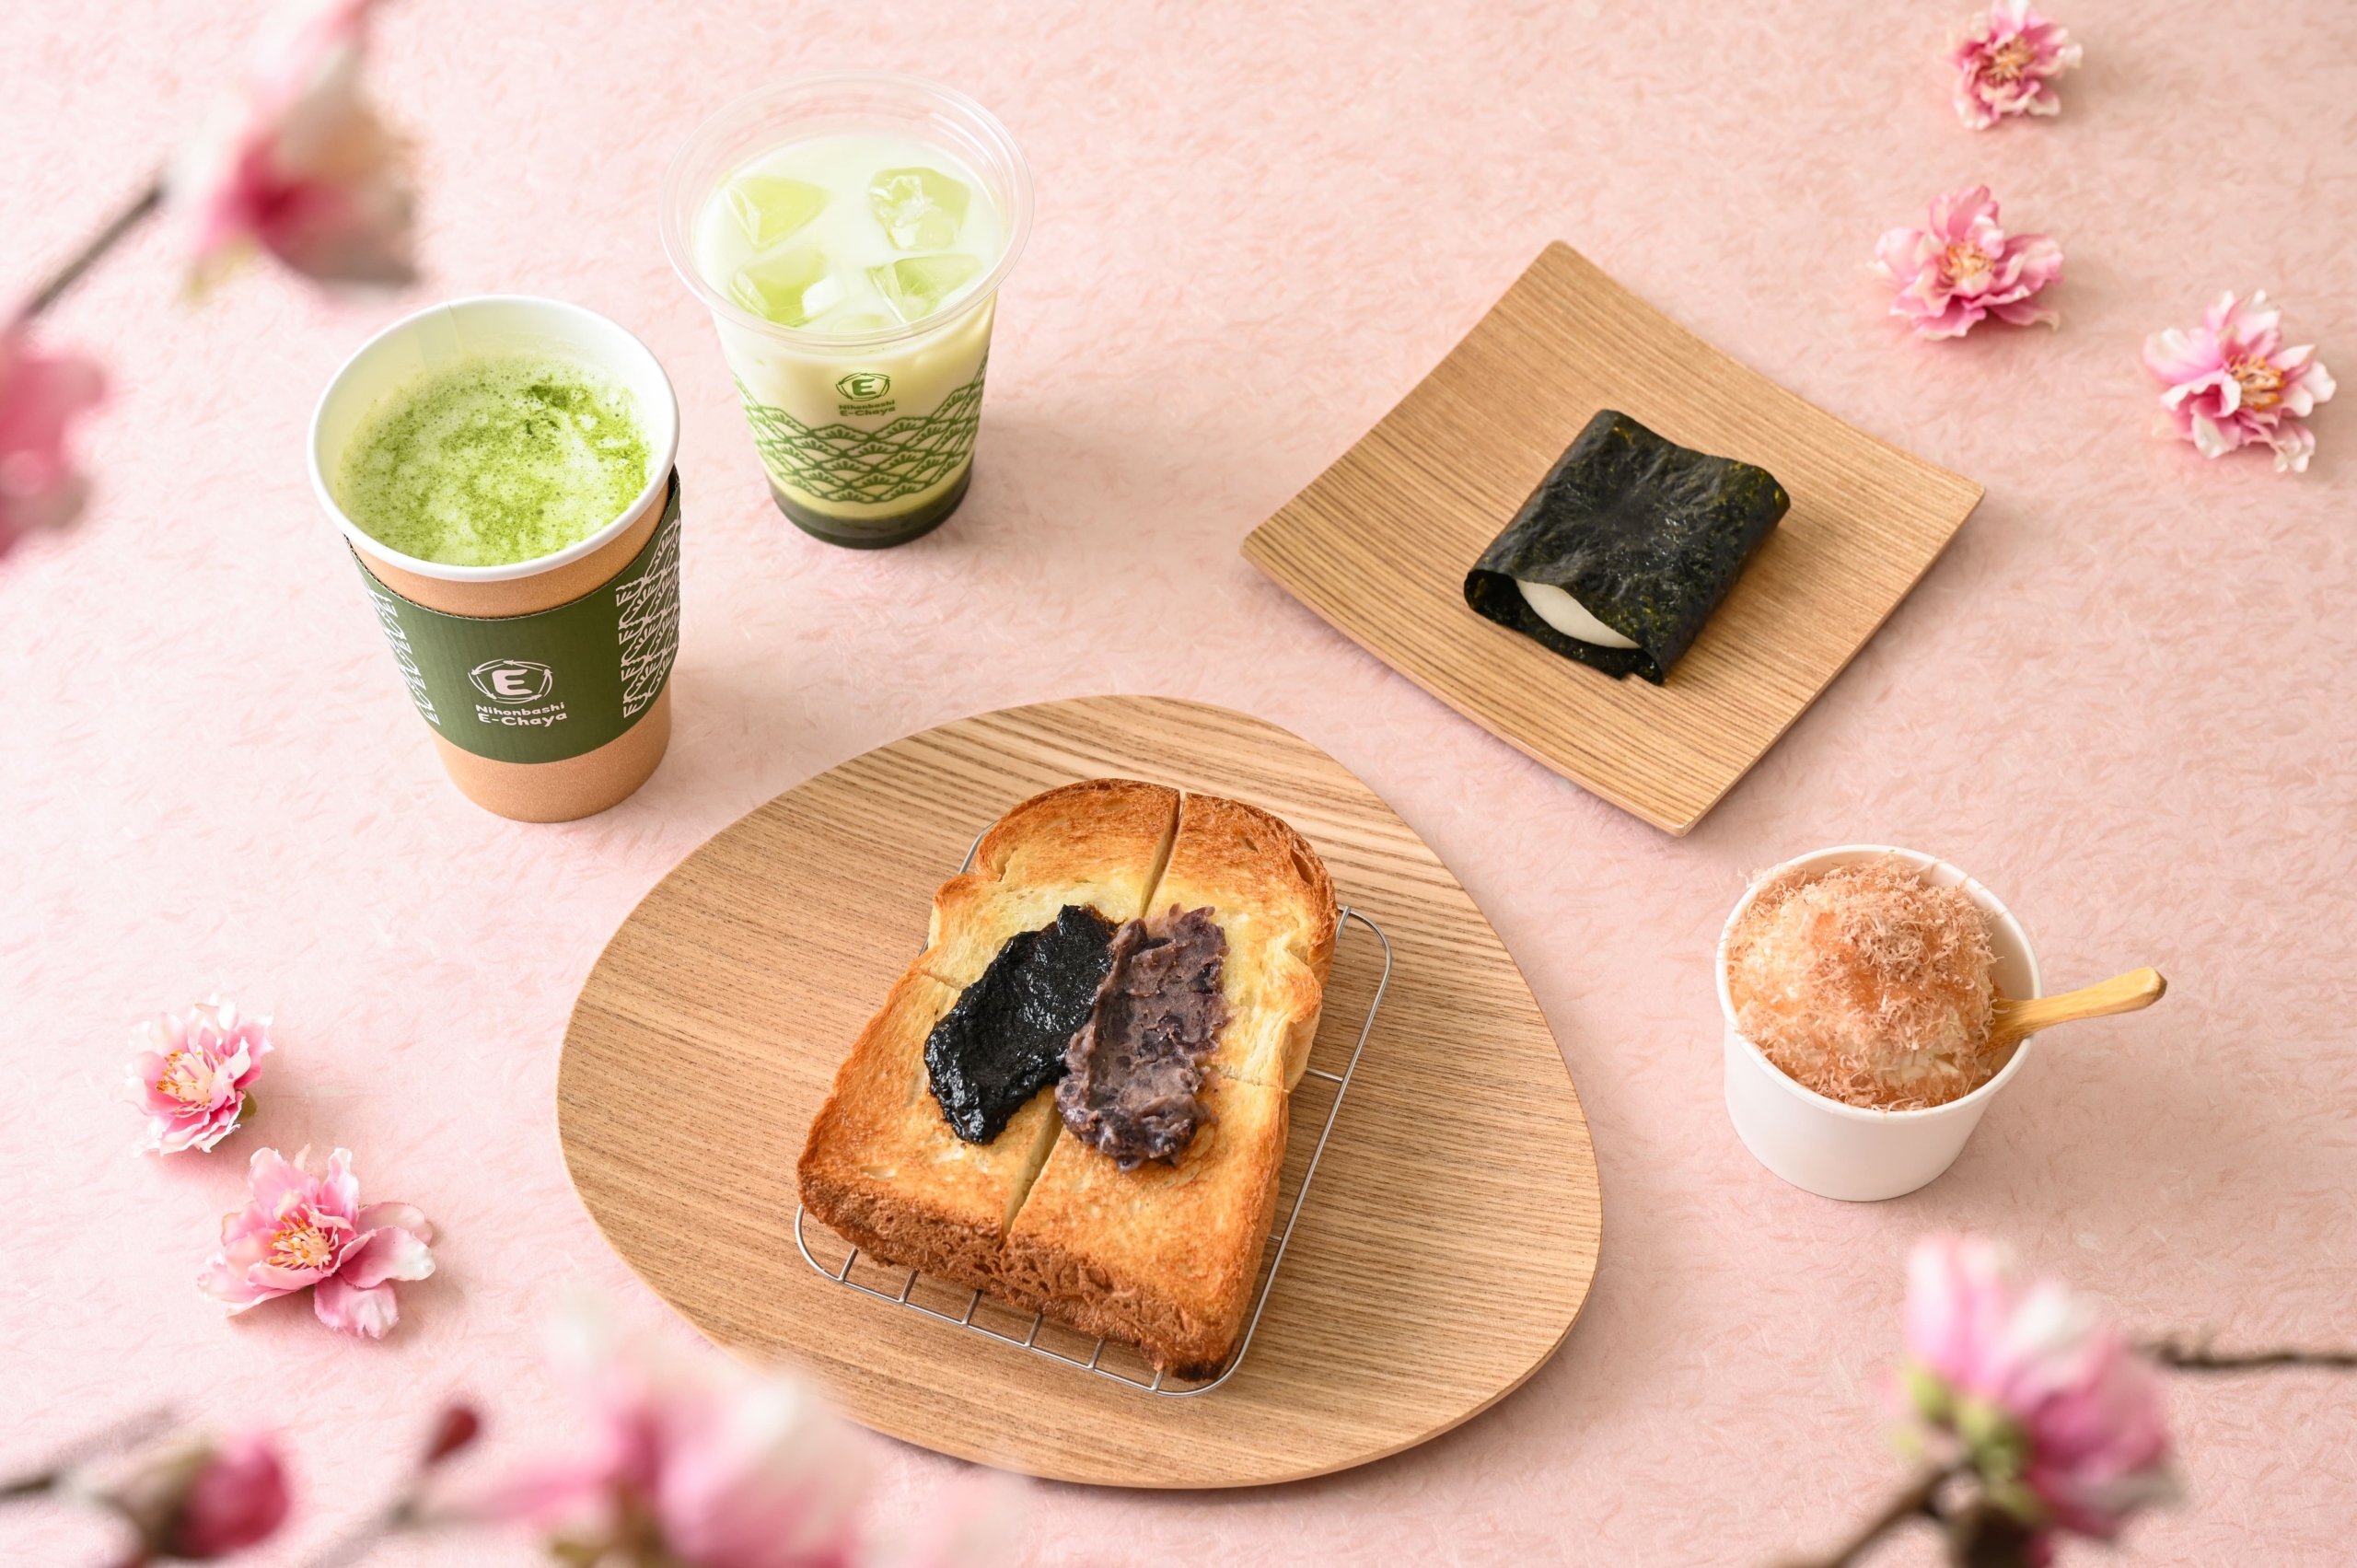 【Eitaro Sohonpo】 Jusqu’au 29 avril, un menu raffiné, fruit d’une collaboration au sein du quartier de Nihonbashi, pour fêter dignement l’anniversaire de la fondation de la maison !